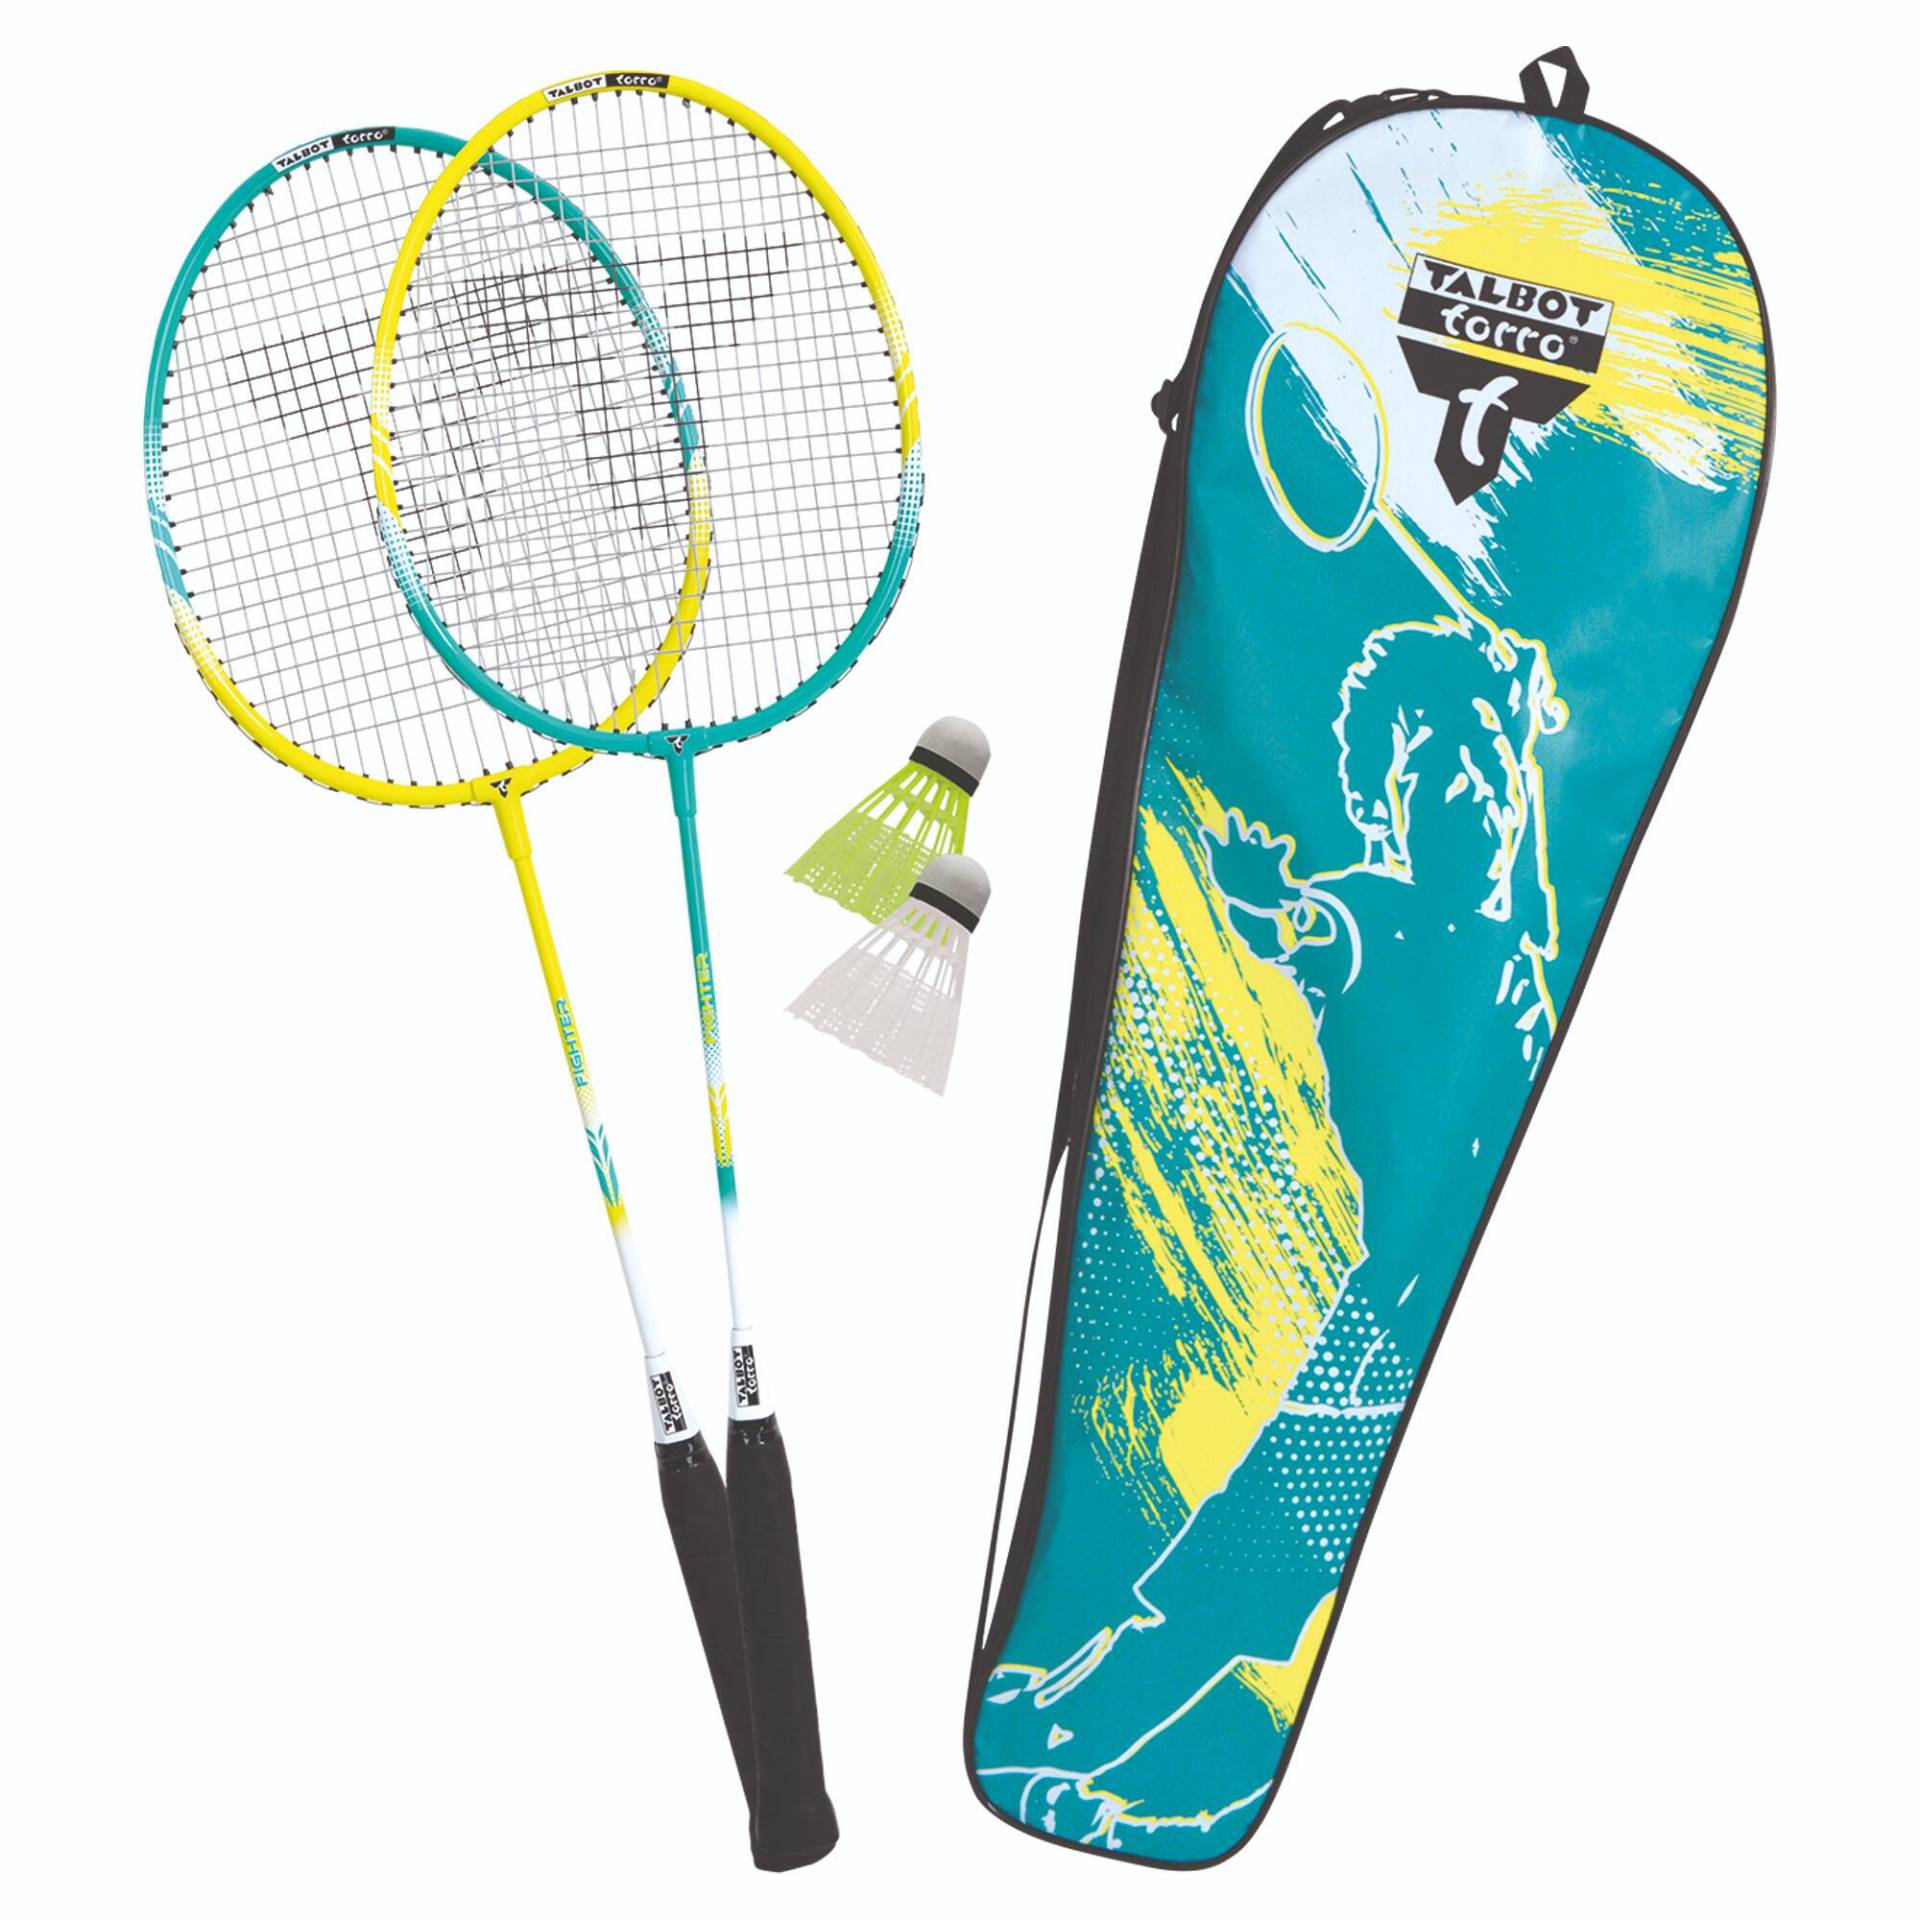 Premium Badminton Set mit 2 leichten Schlägern und 2 Kunststoff-Federbällen von Talbot torro